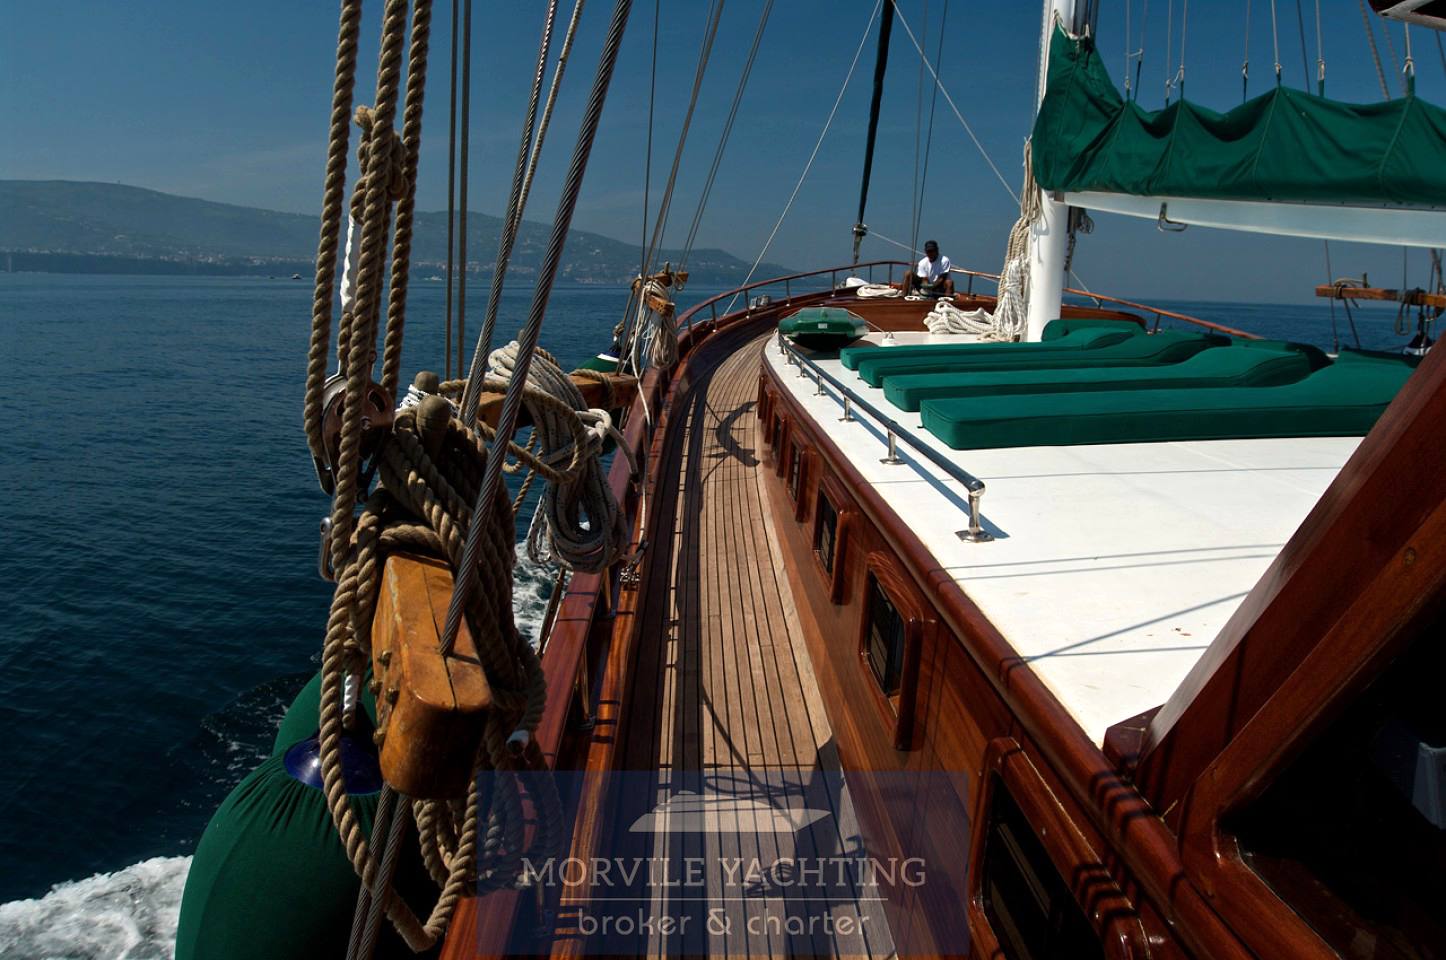 Goletta Deriya-deniz motor boat